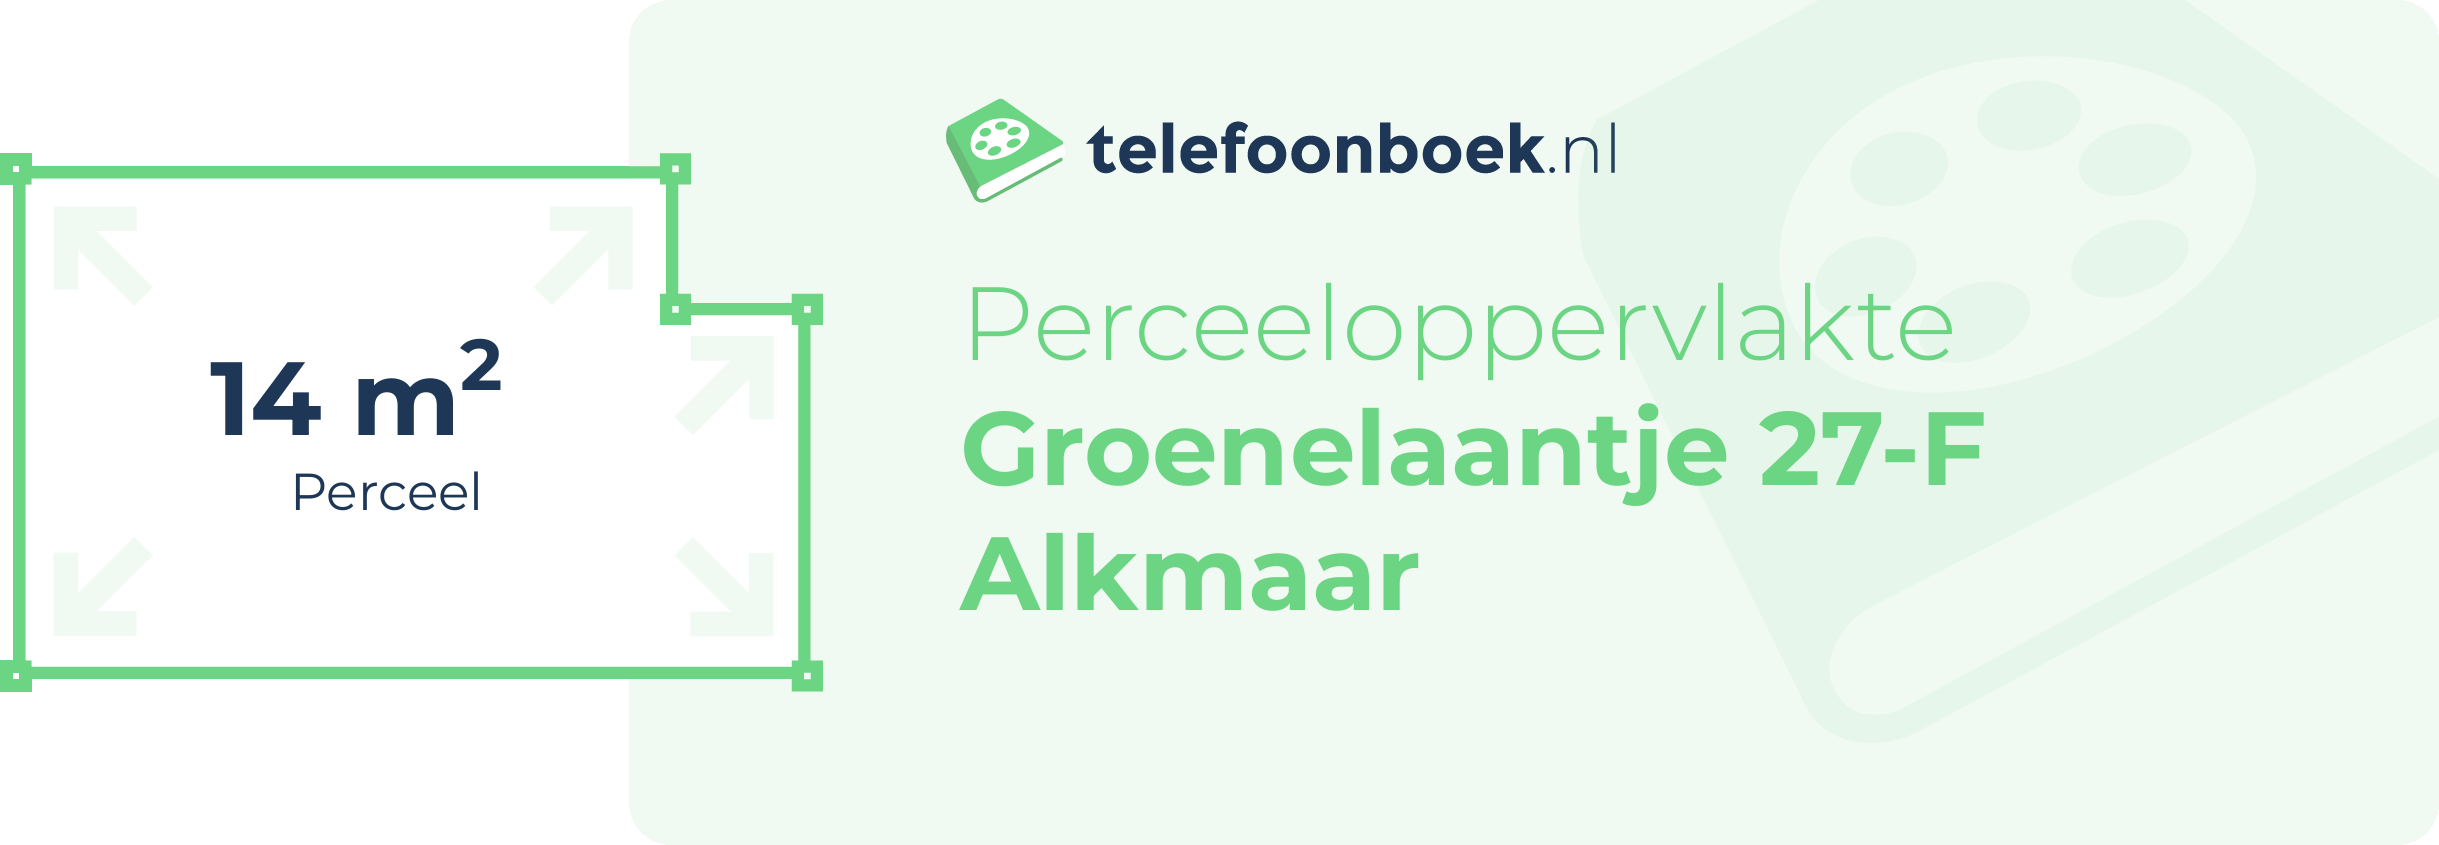 Perceeloppervlakte Groenelaantje 27-F Alkmaar